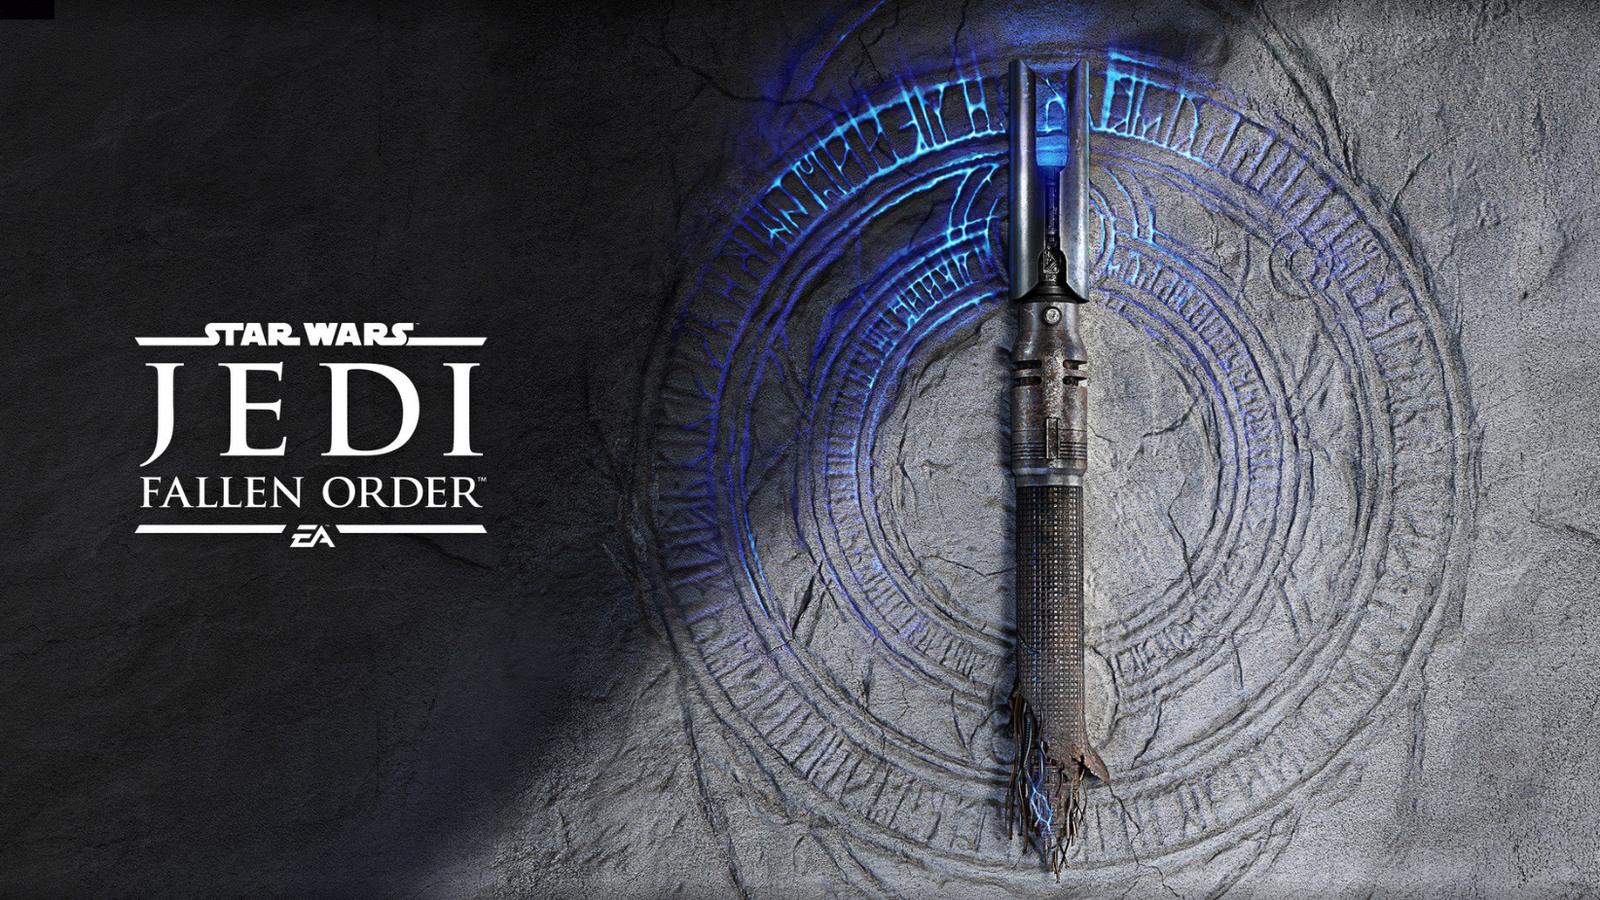 [Leak] Star Wars Jedi: Fallen Order released on November 15th, Deluxe Edition appears